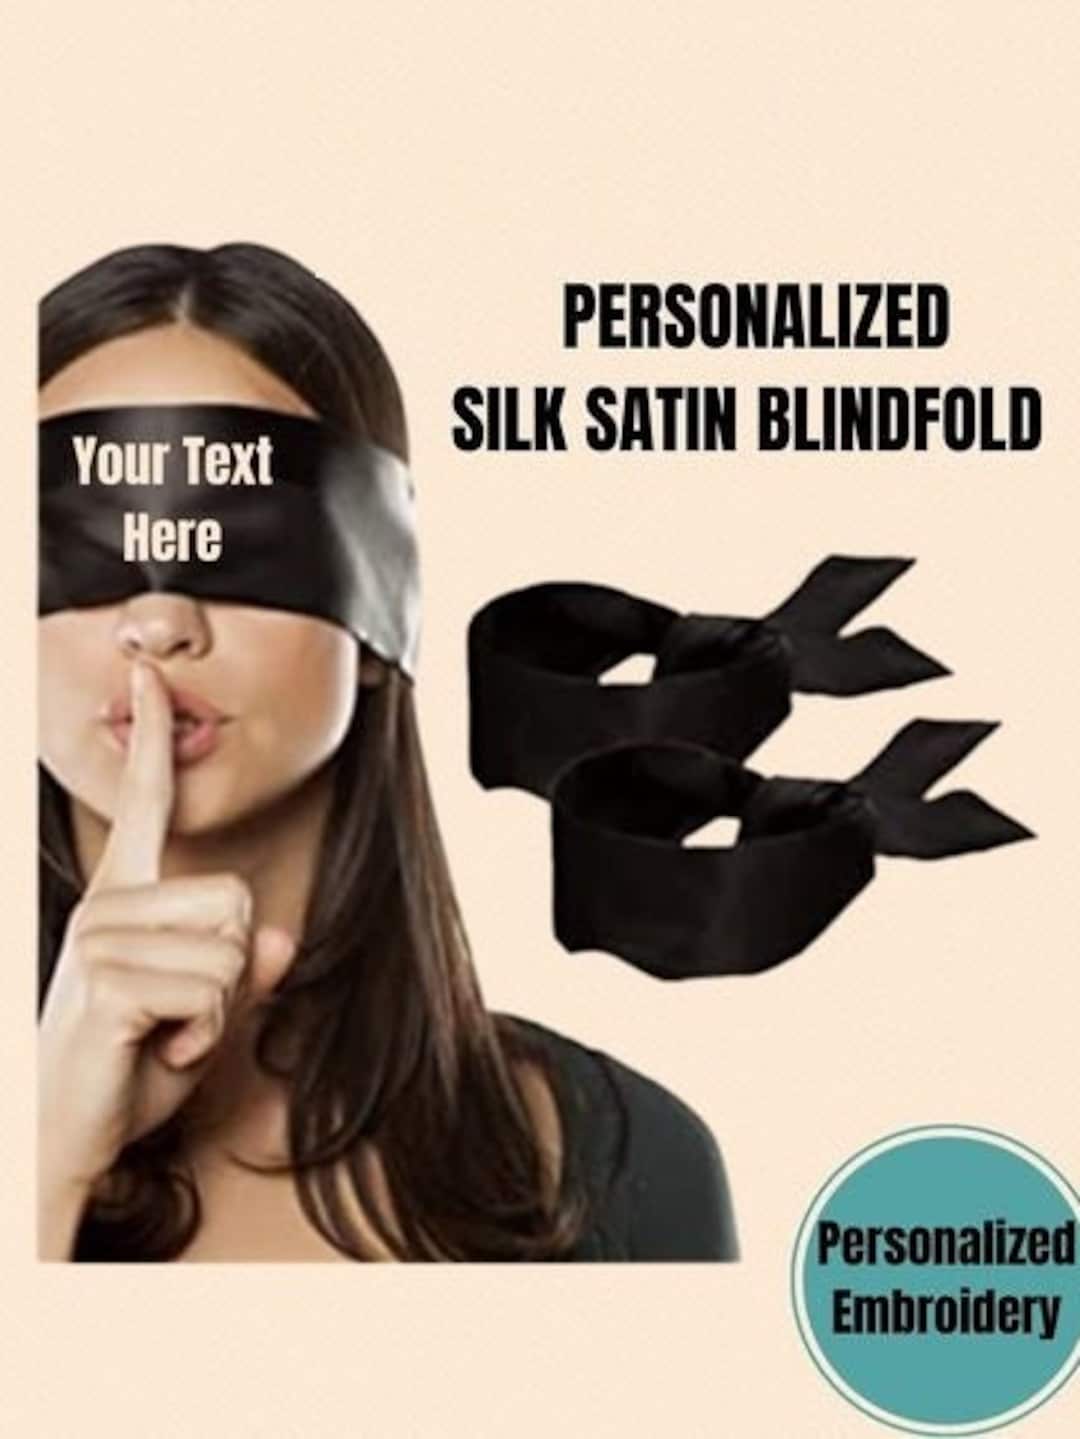 Mindfold Sensory Deprivation Mask Blindfold -  Portugal